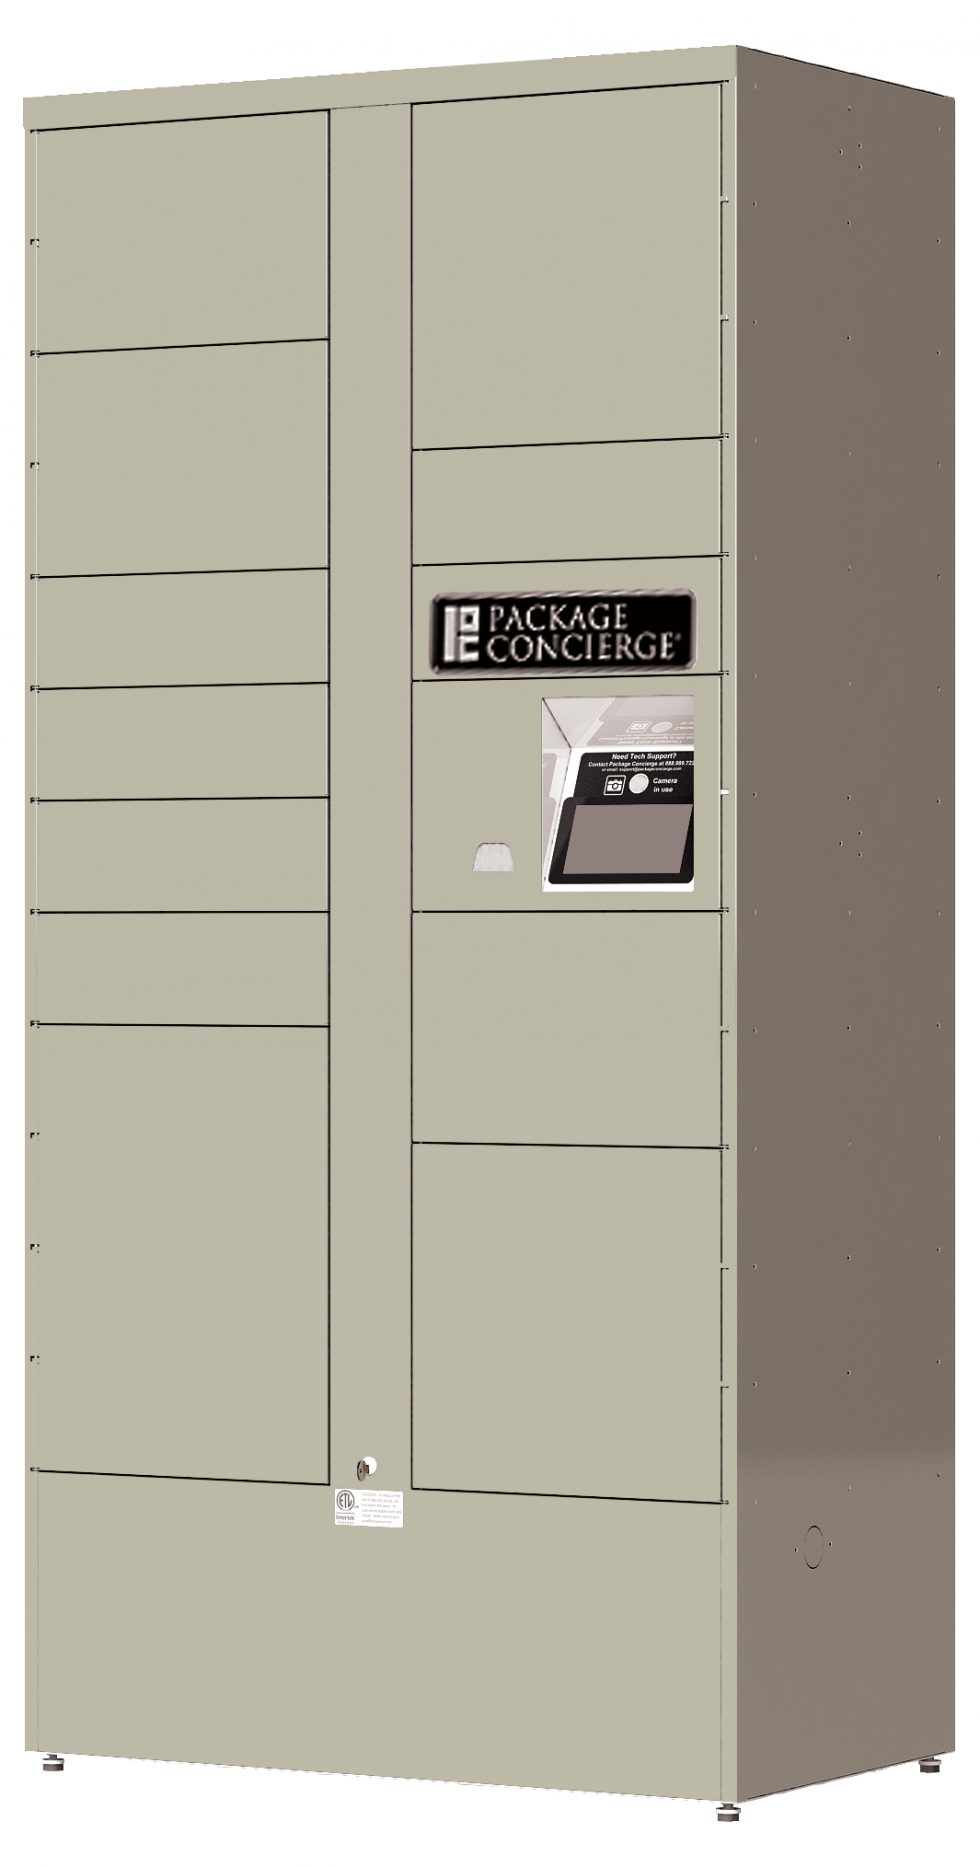 parcel locker meaning